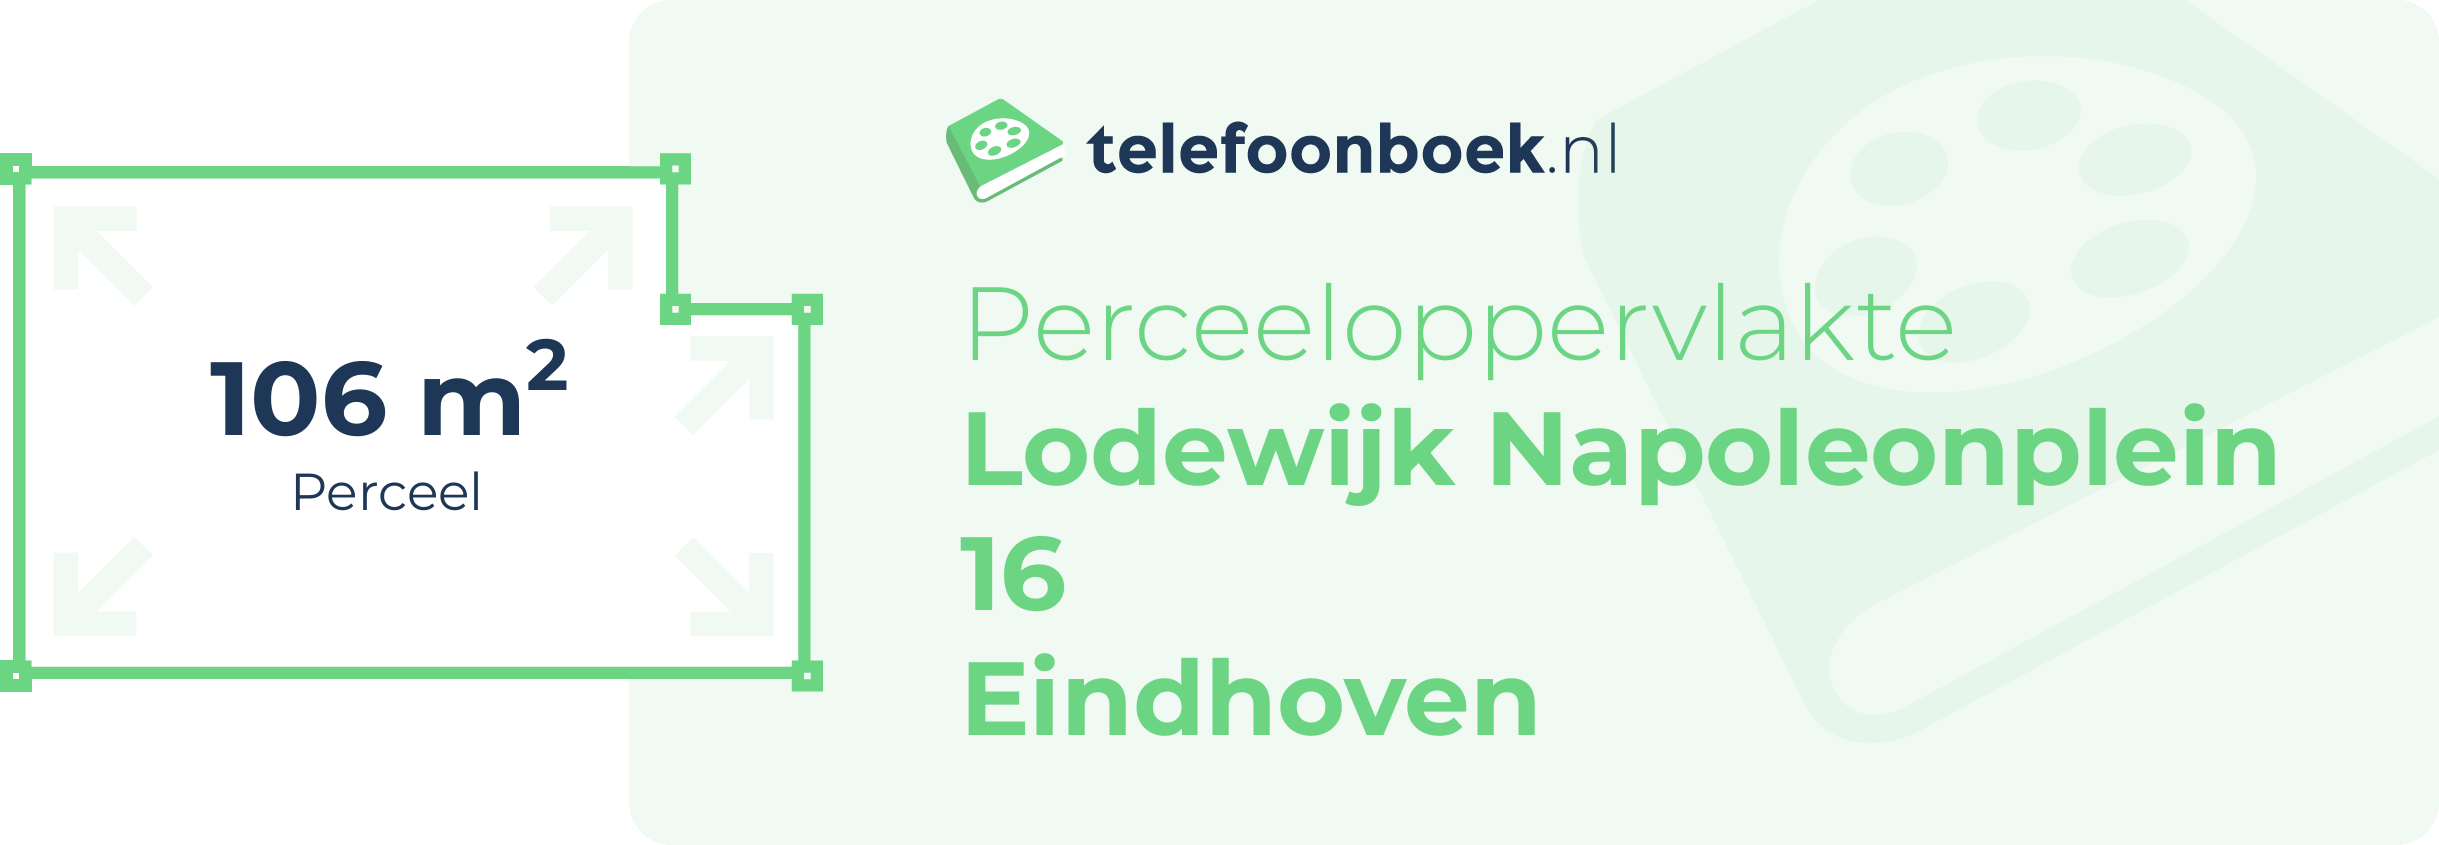 Perceeloppervlakte Lodewijk Napoleonplein 16 Eindhoven